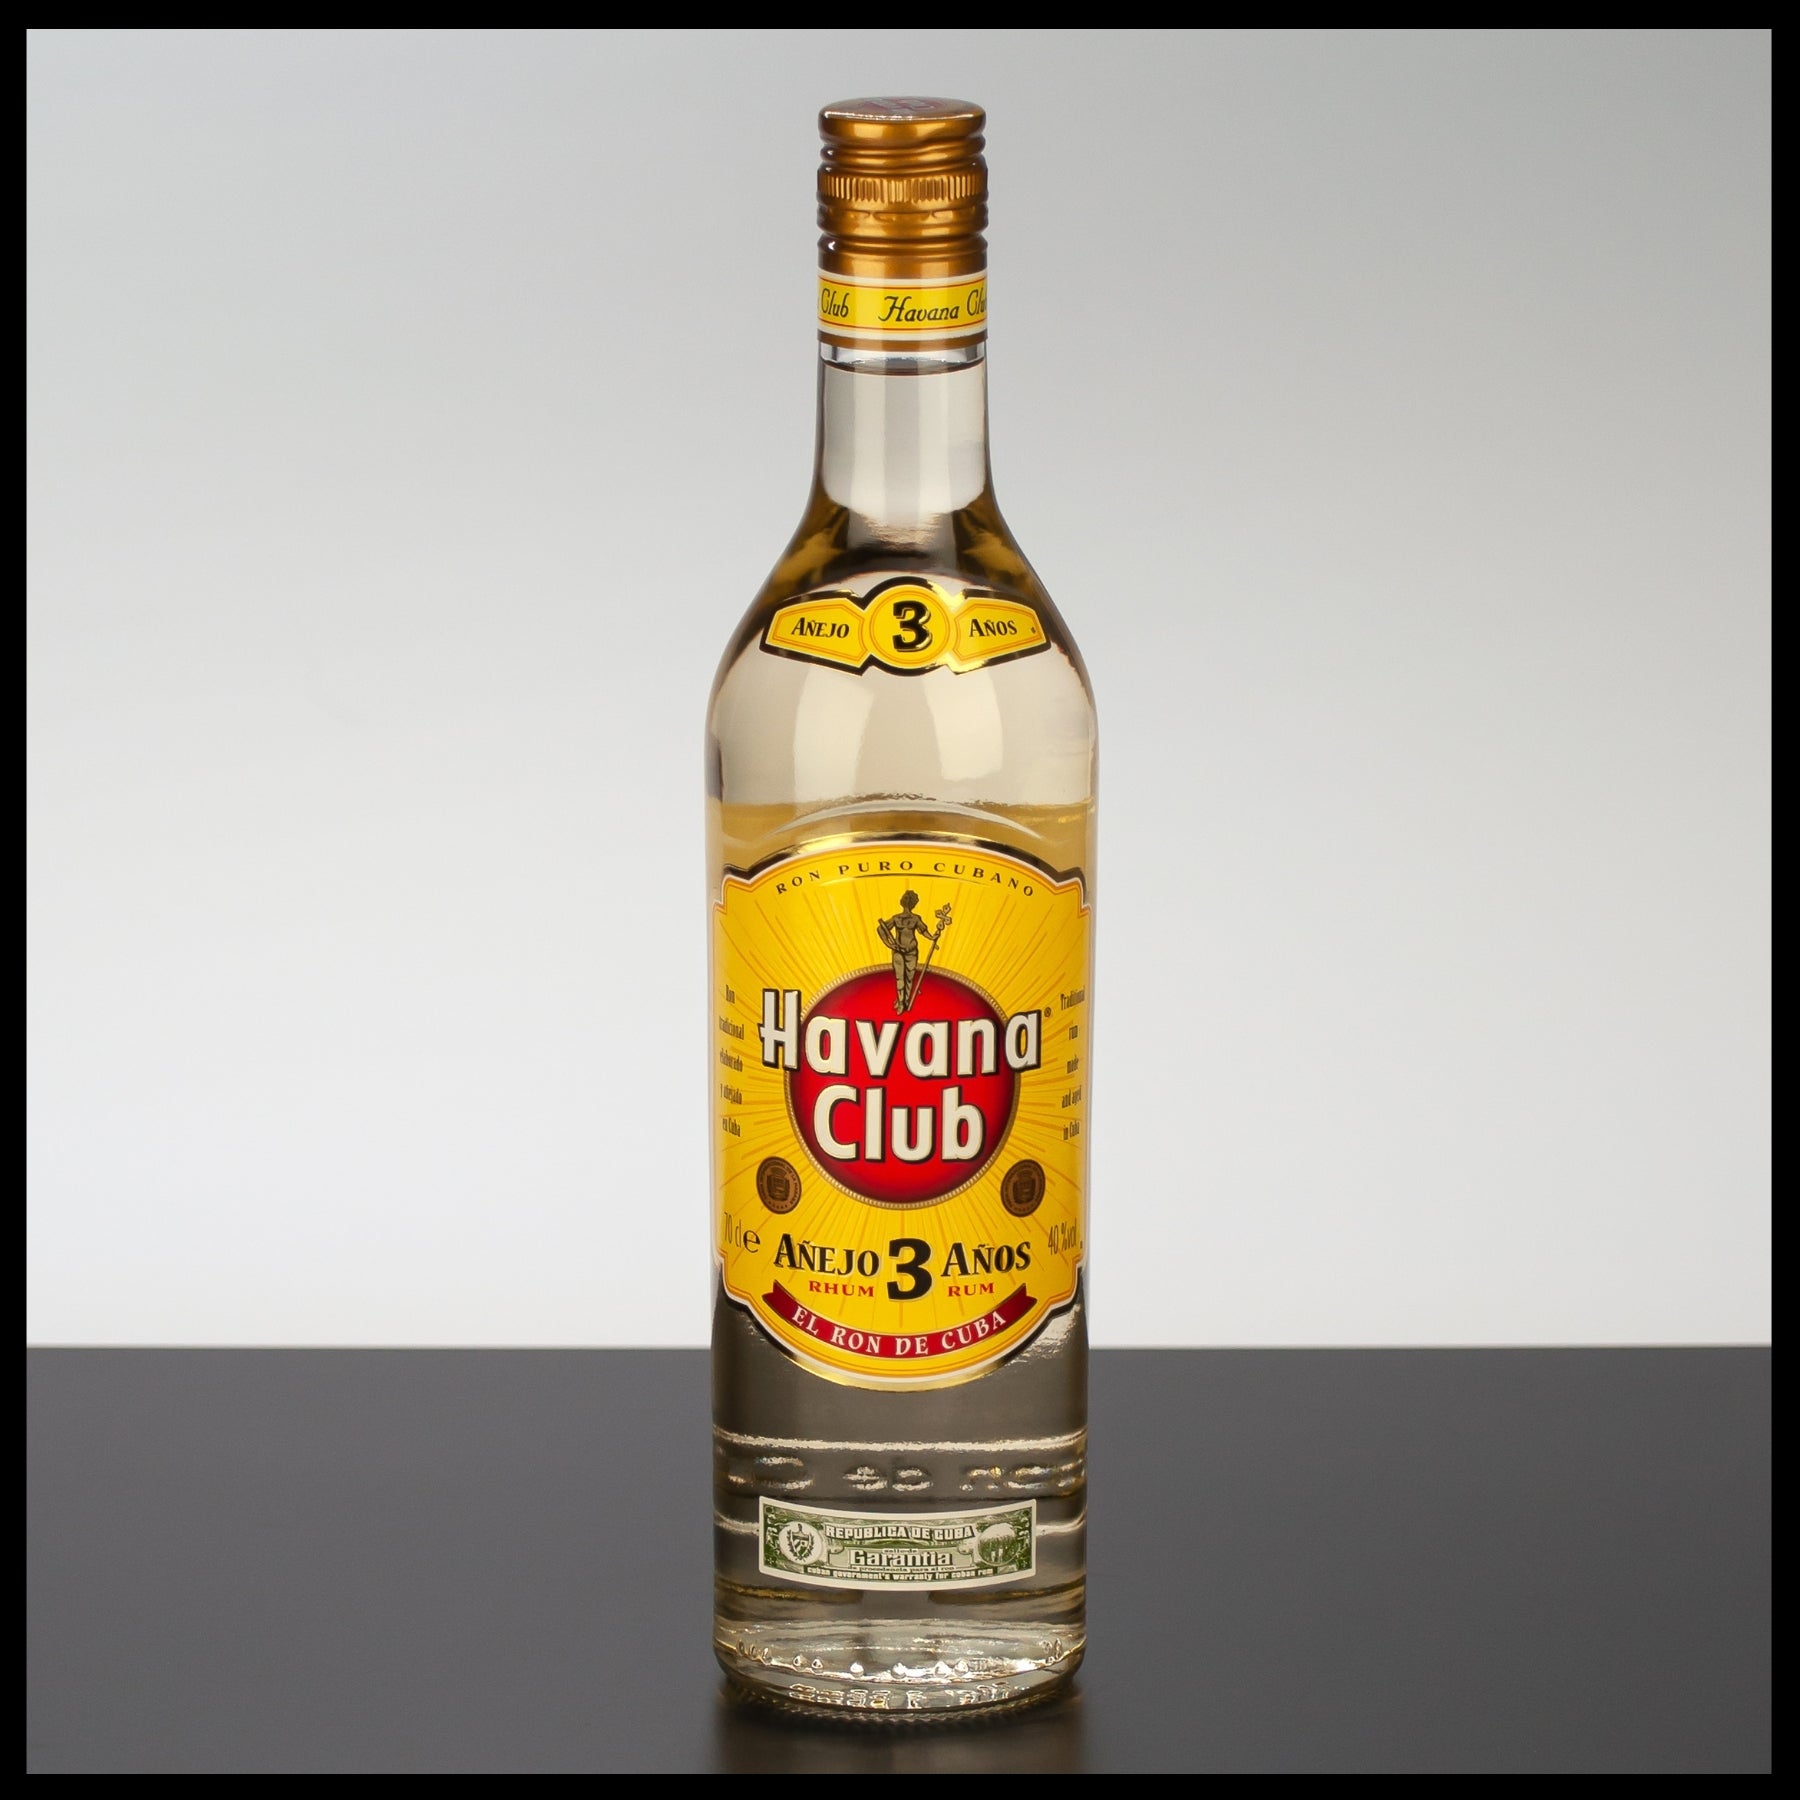 Havana Club Anejo 3 - Rum Anos 40% 0,7L